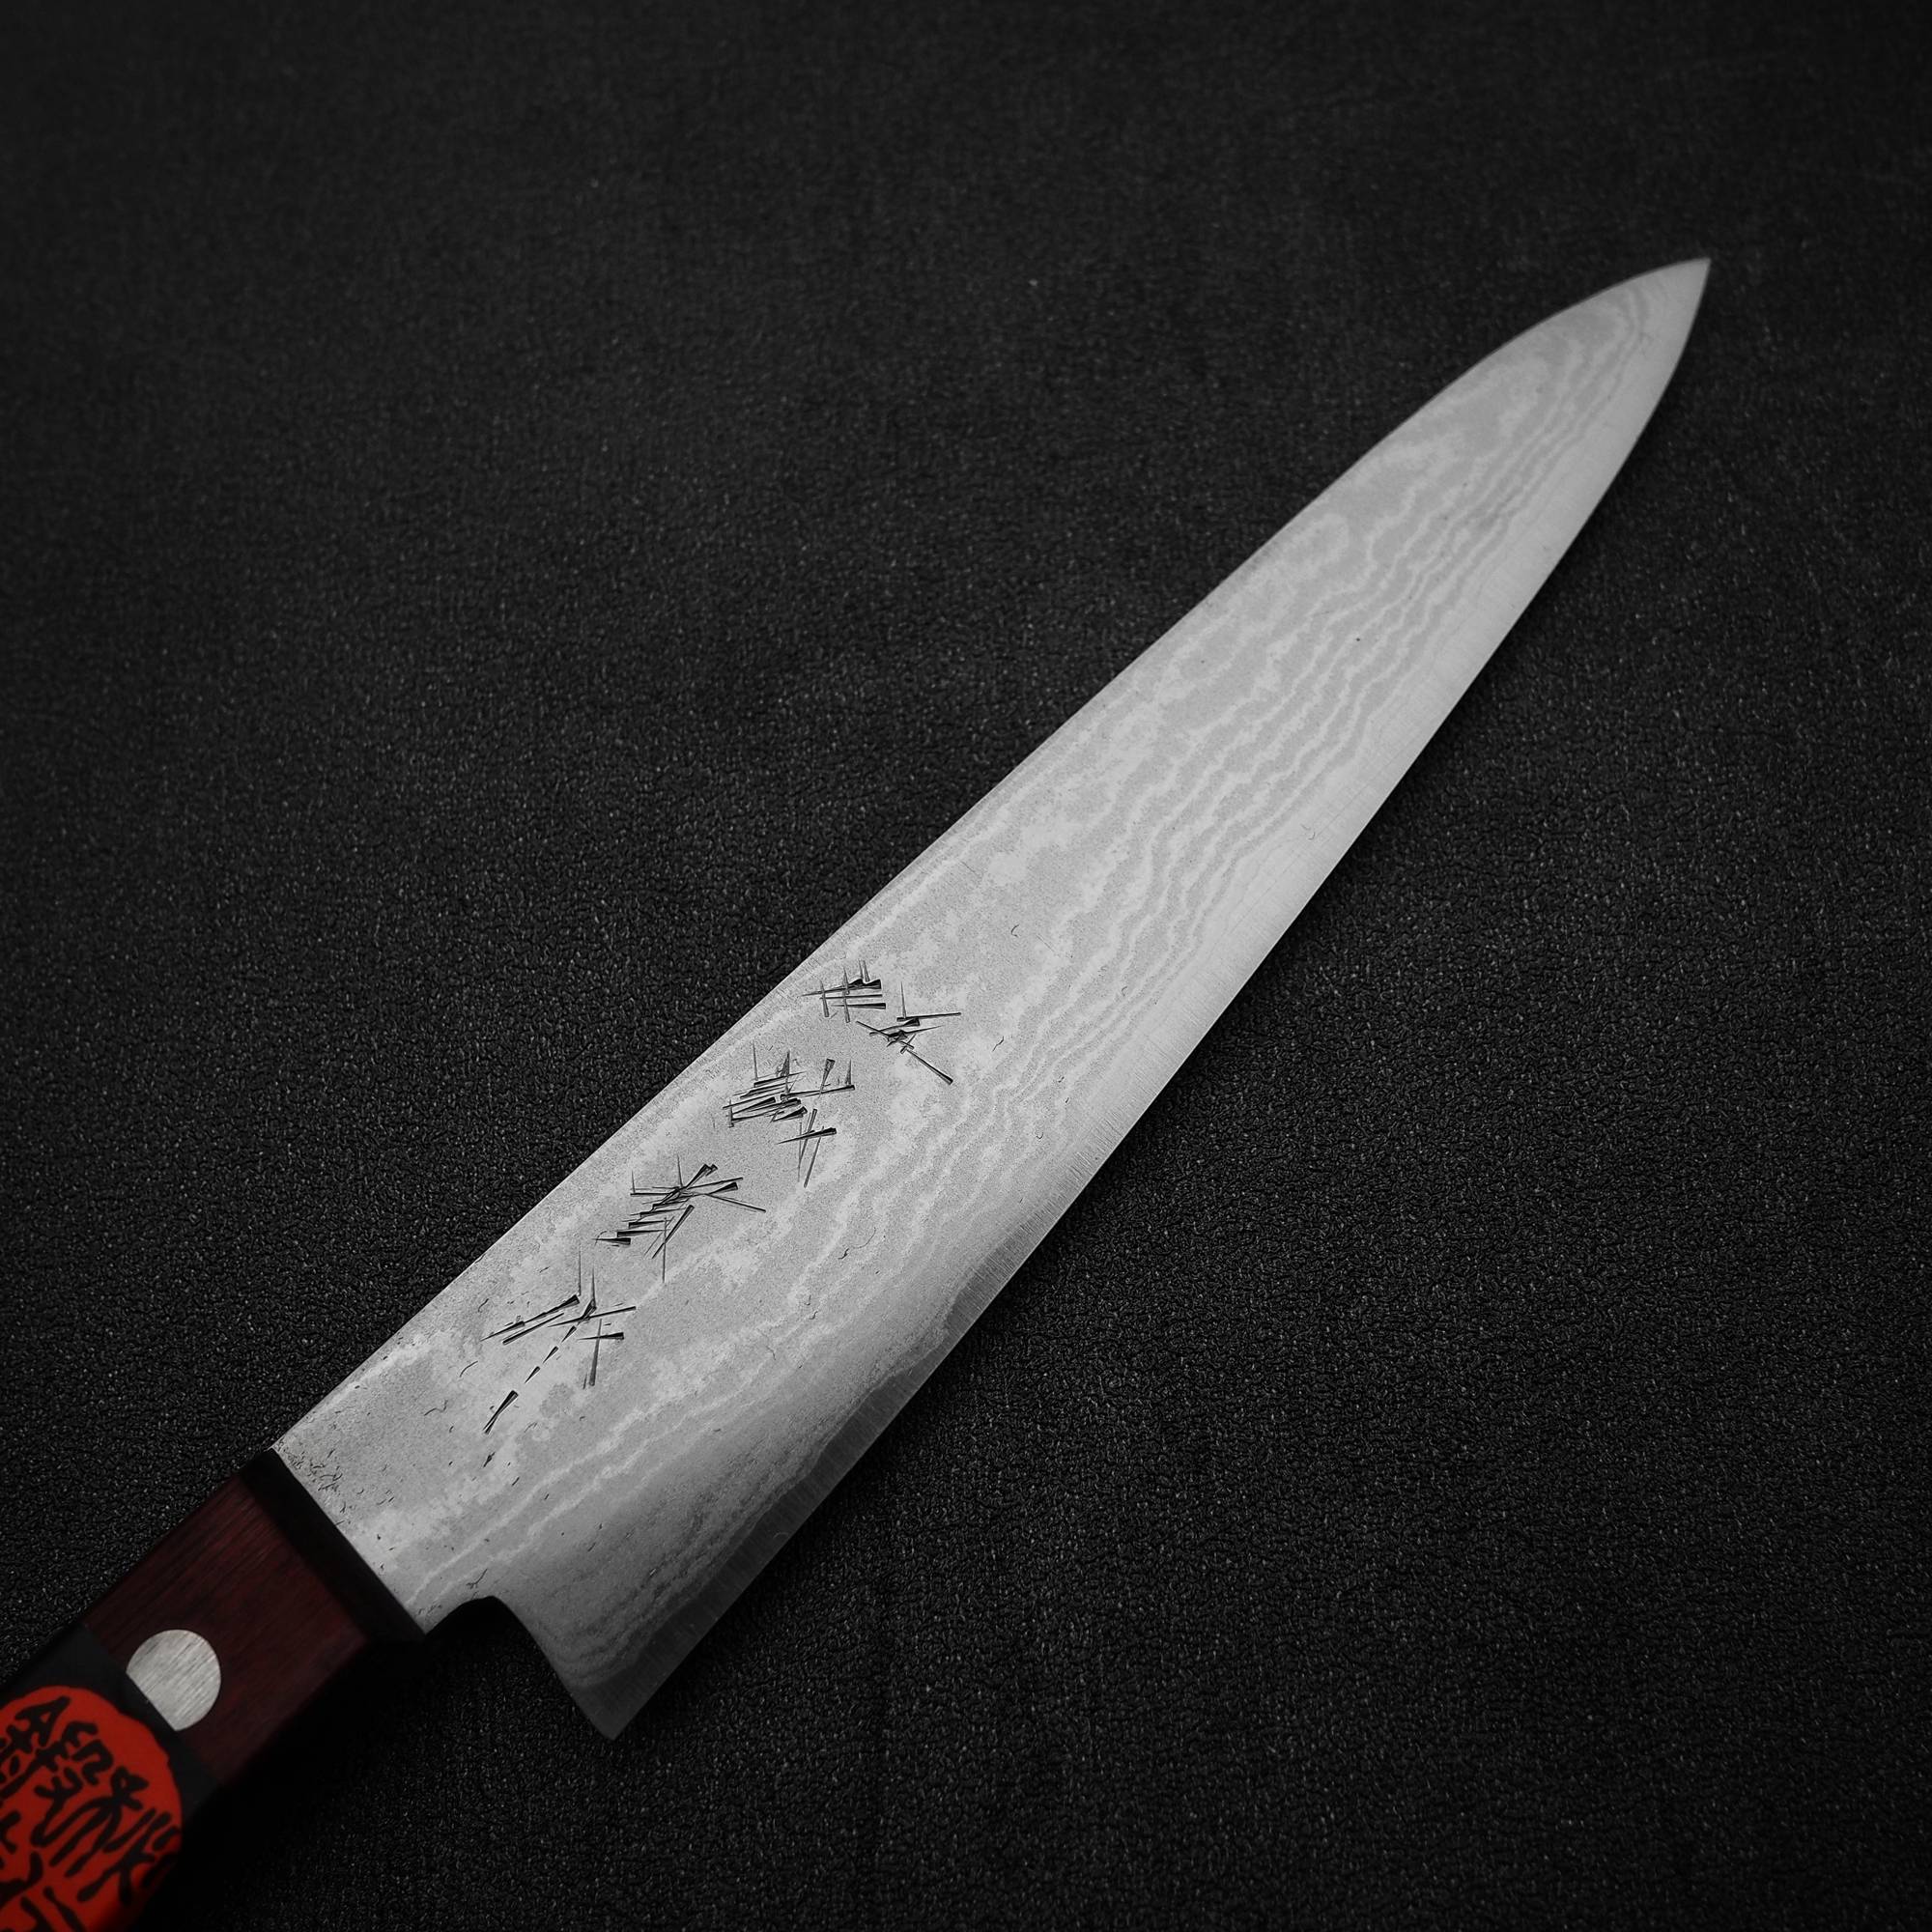 Shigeki Tanaka Knives | Zahocho Knives Tokyo